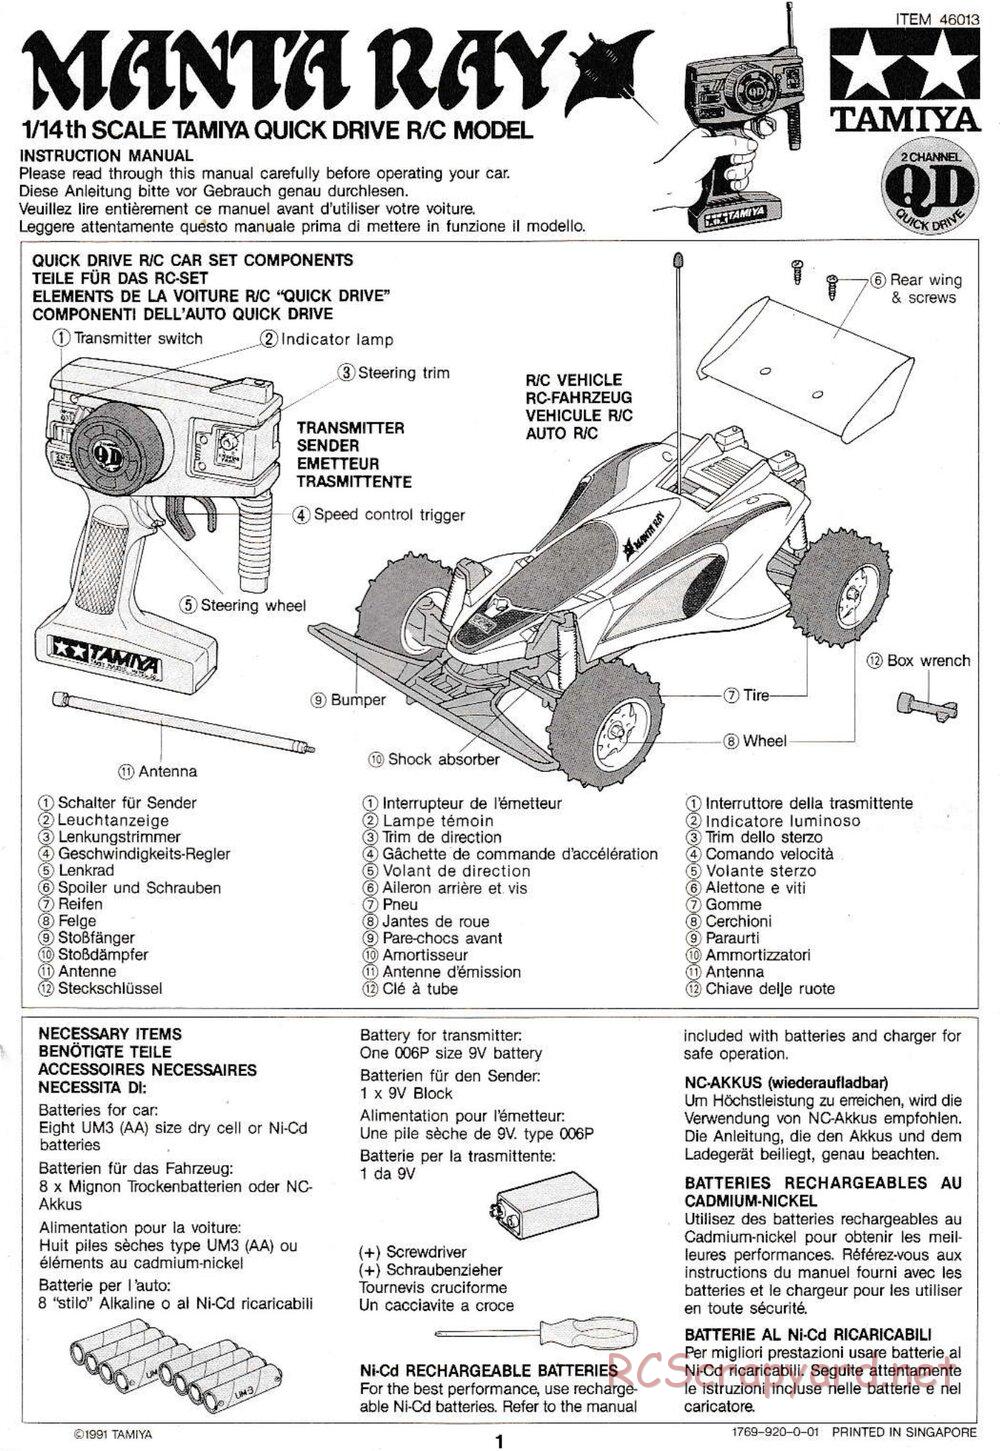 Tamiya - Manta Ray QD Chassis - Manual - Page 1